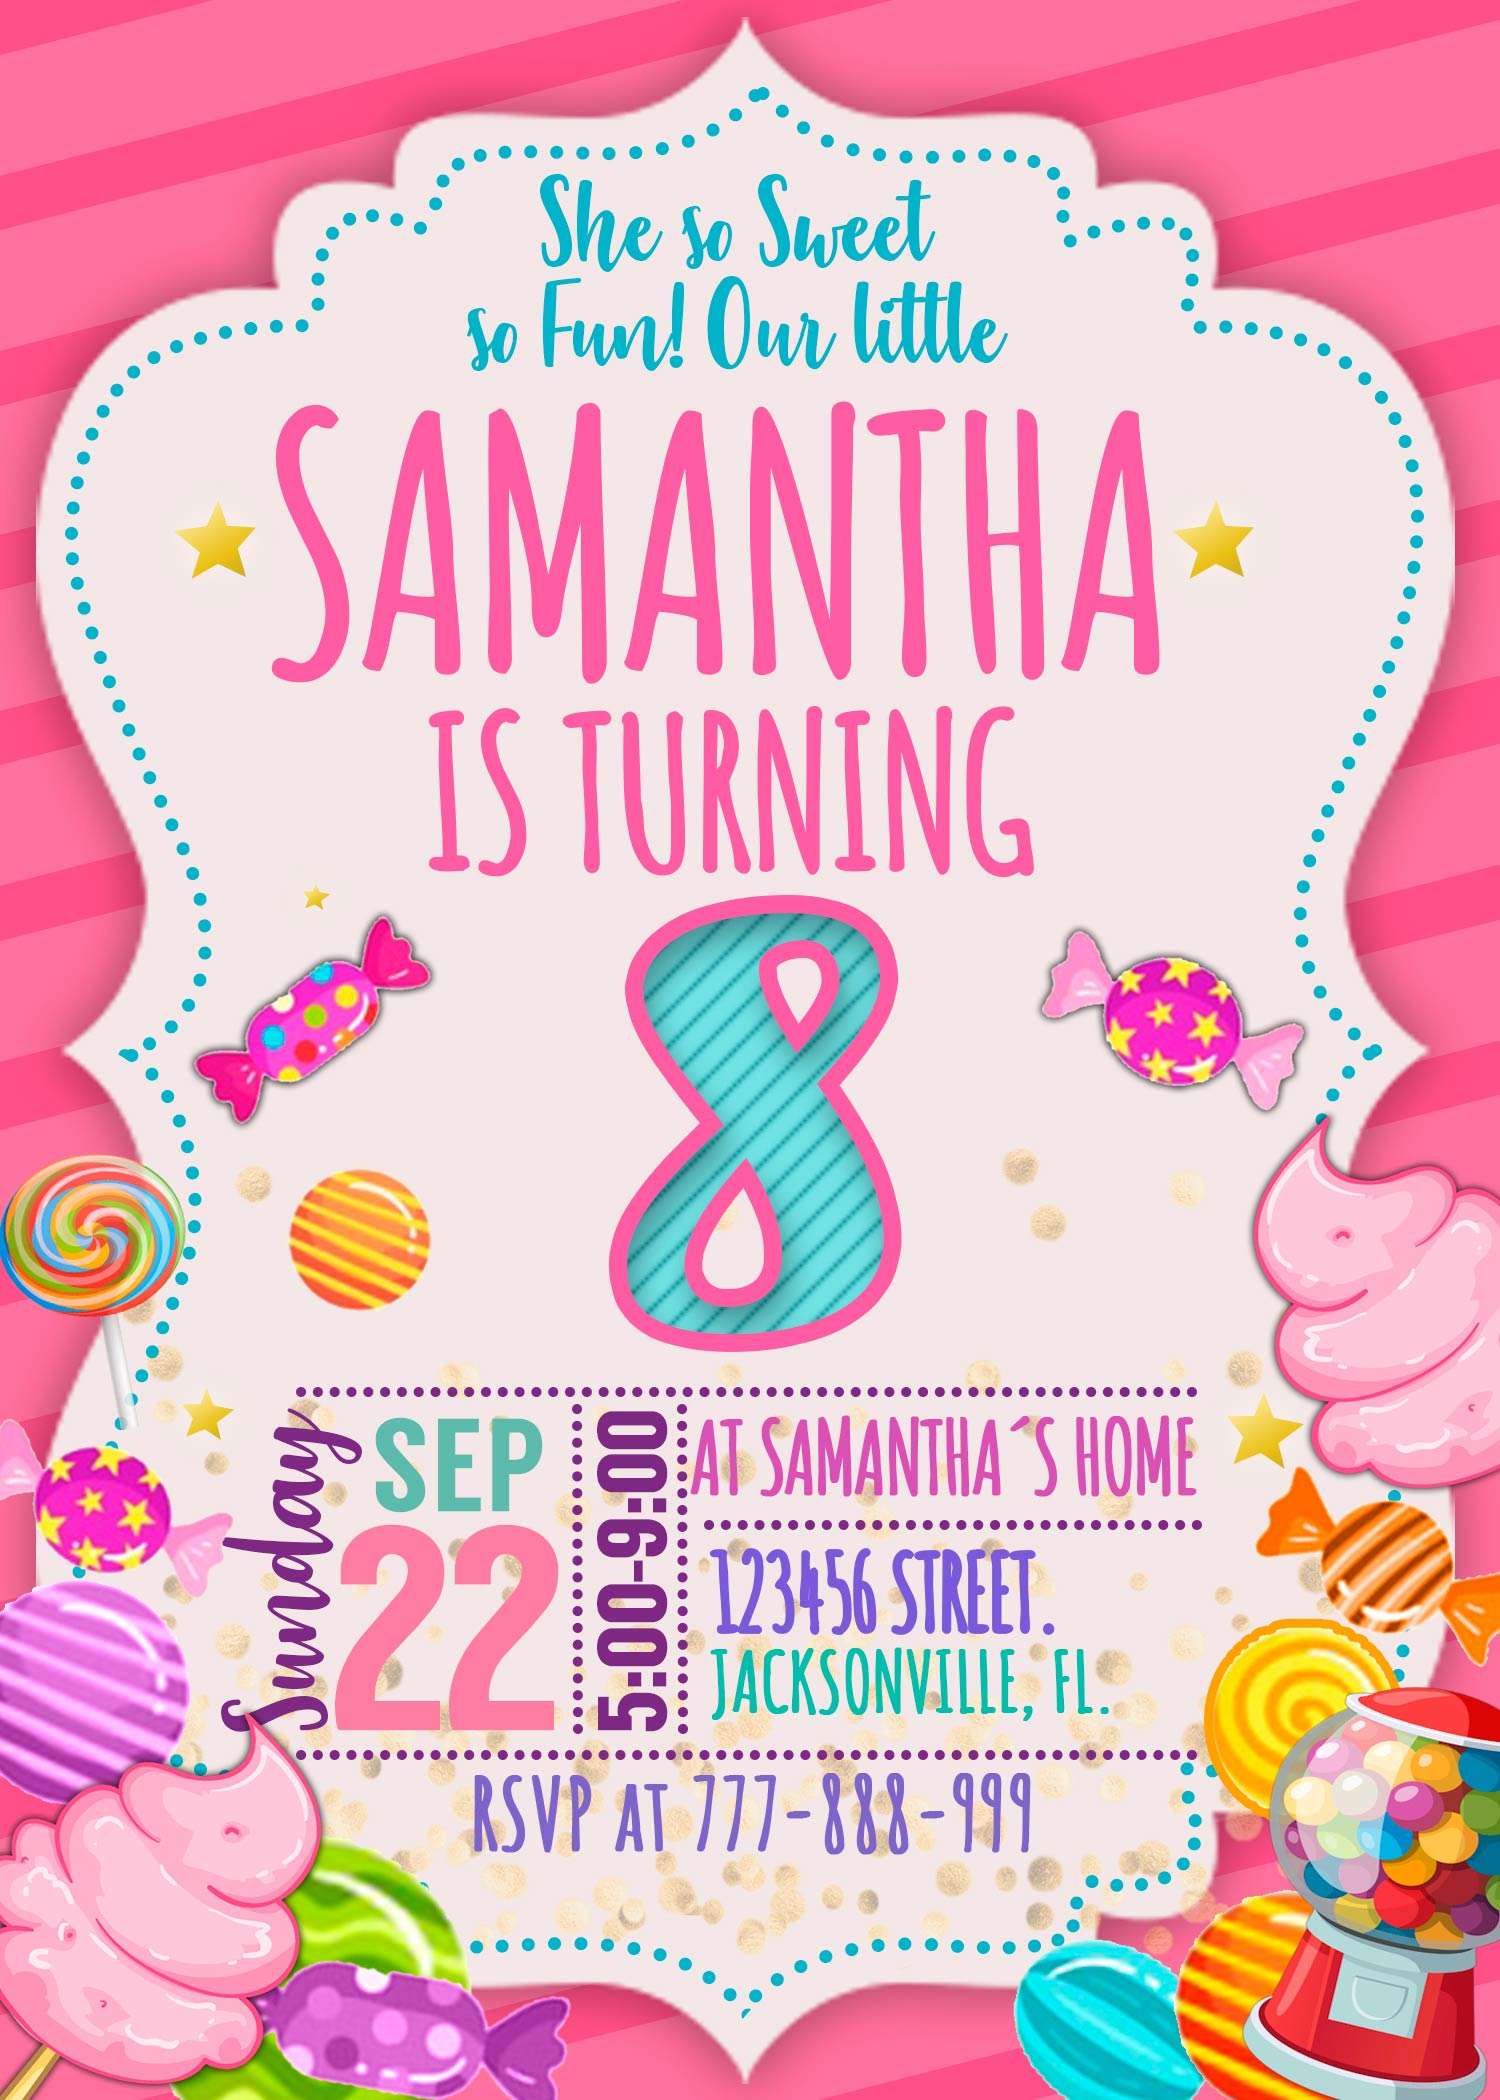 Candyland Birthday Invitation